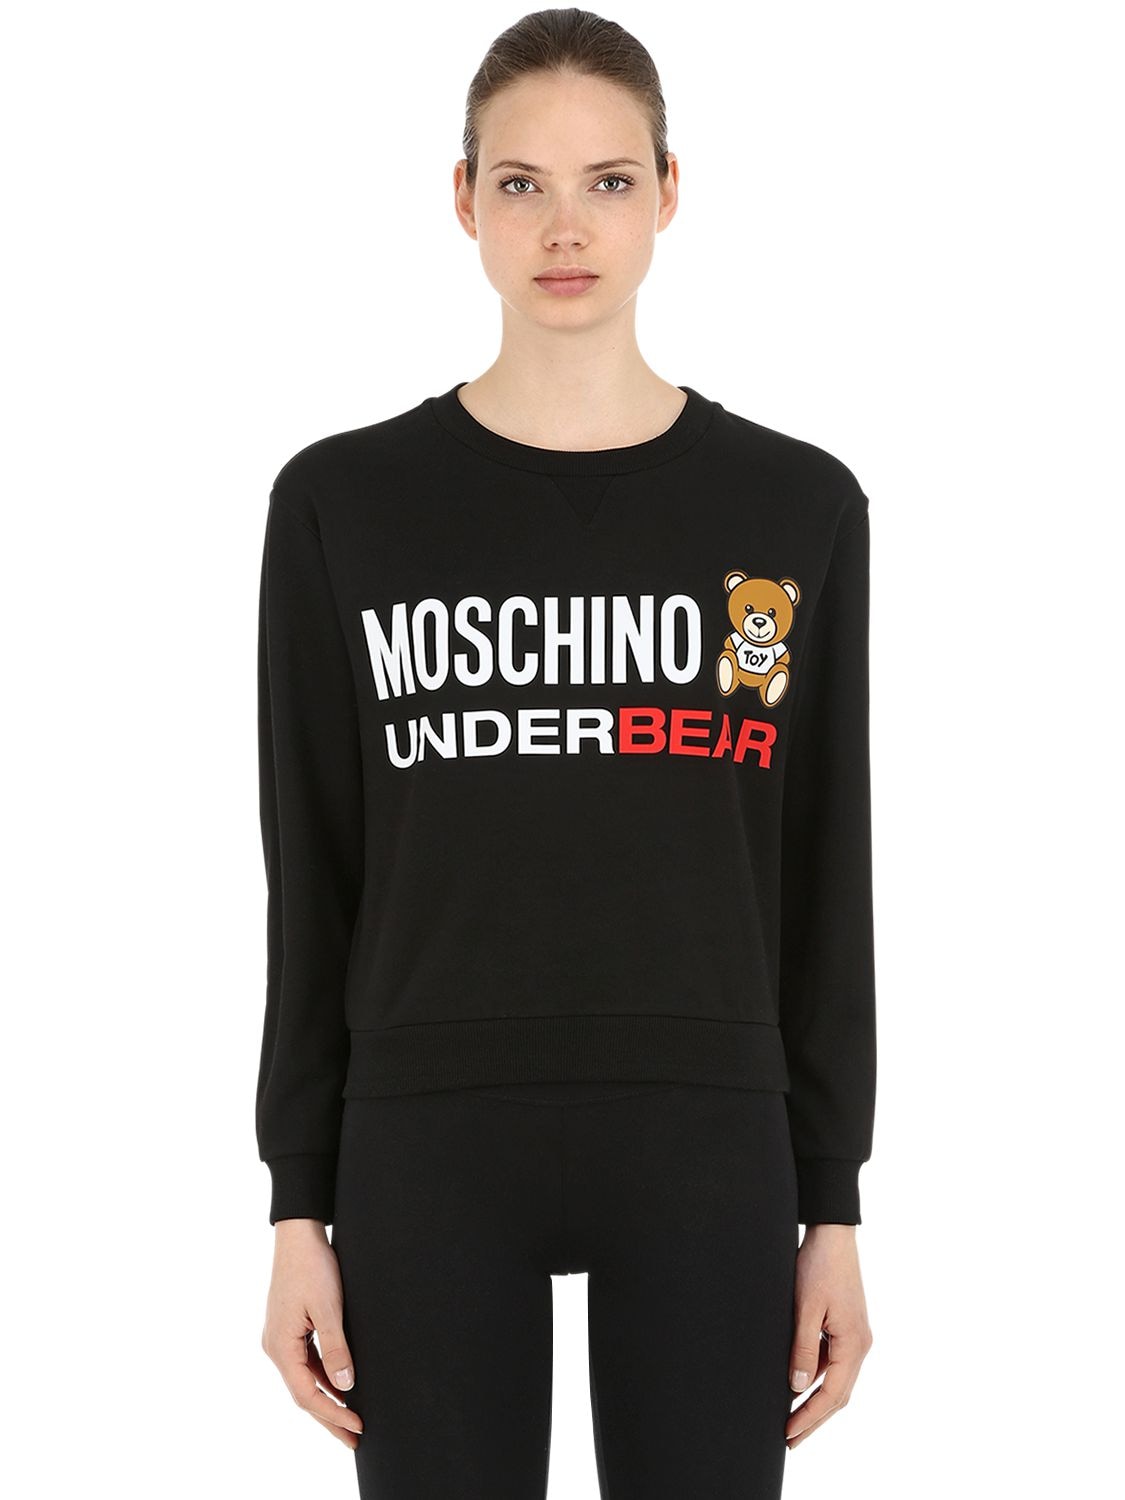 Moschino Underwear Underbear Cotton Sweatshirt In Black